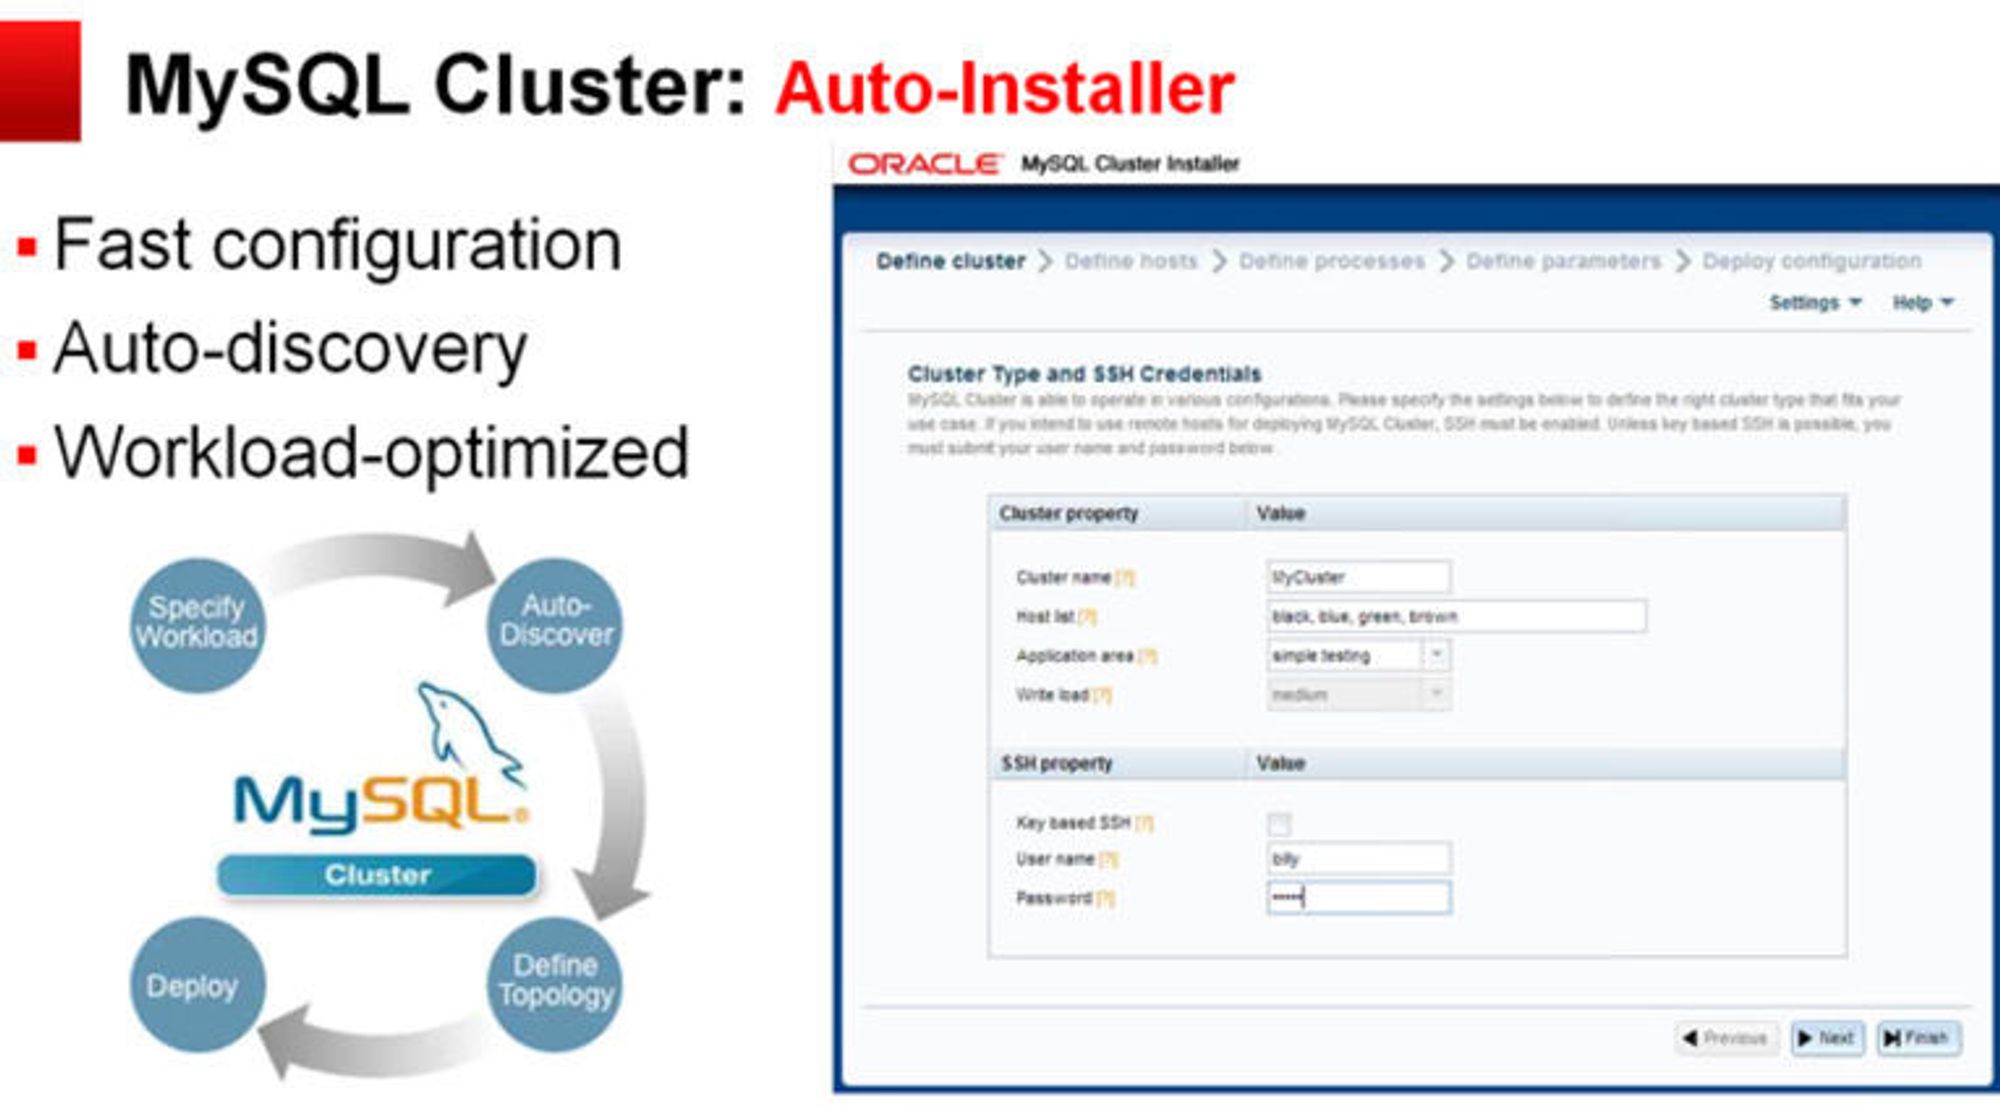 Enklere installasjon framheves som vesentlig faktor i å få MySQL Cluster inn i nye anvendelsesområder.